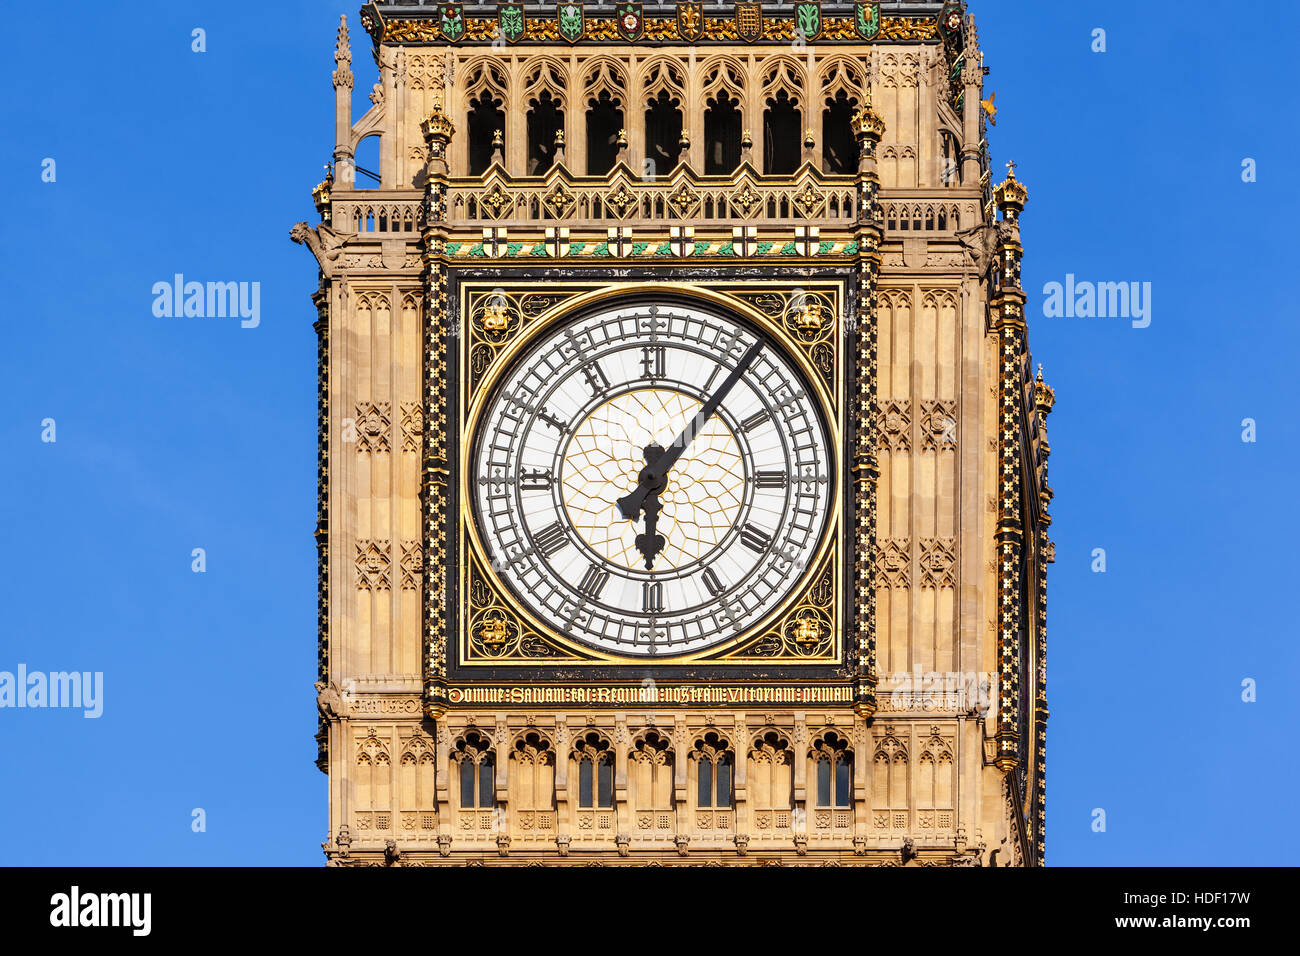 De près de l'horloge de Big Ben à Westminster, Londres sur une journée ensoleillée. Banque D'Images